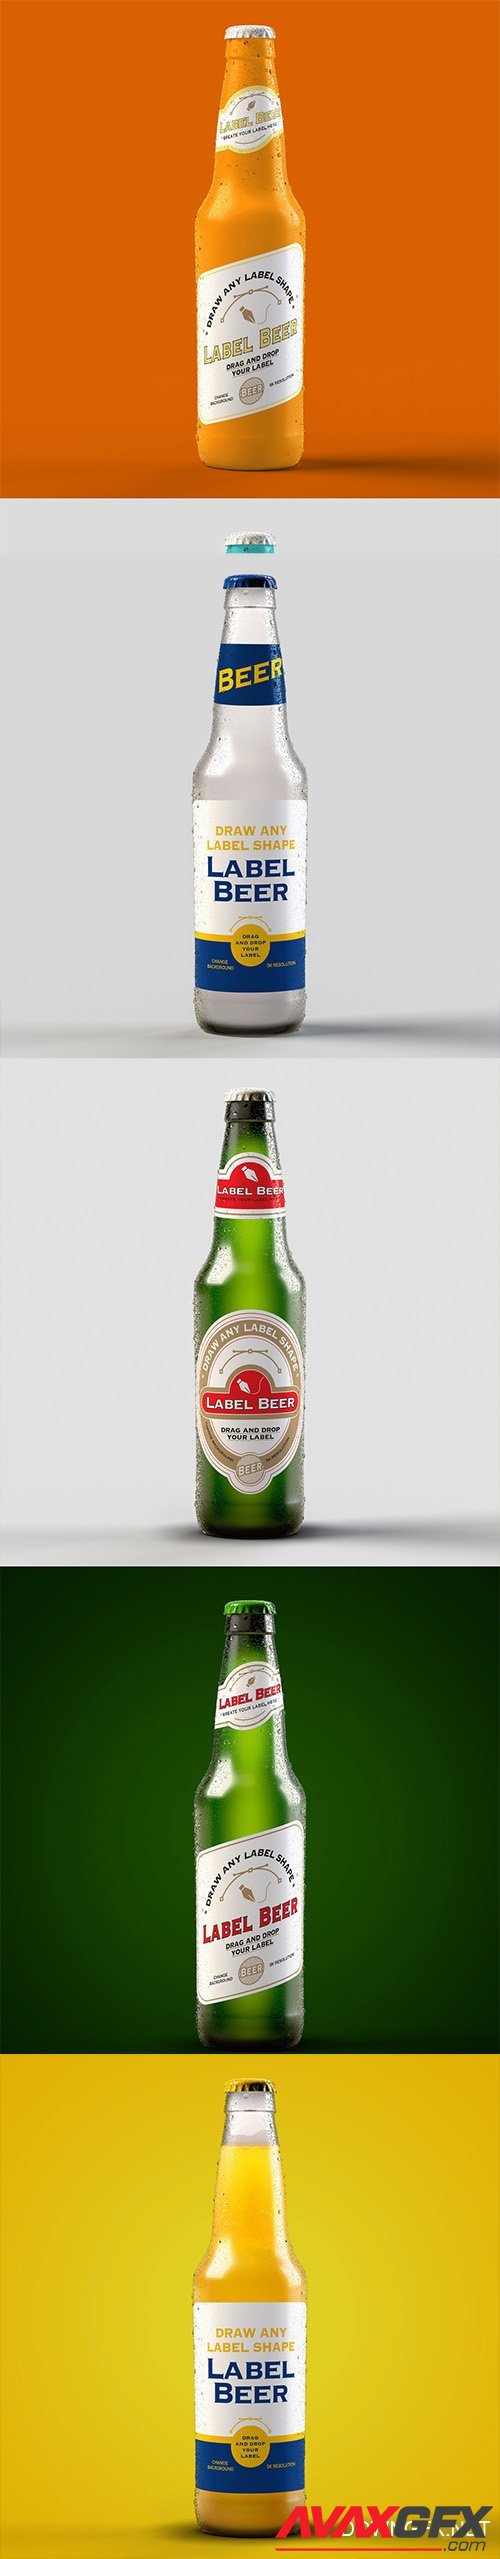 Beer Bottle Packaging Design Mockups PSDT